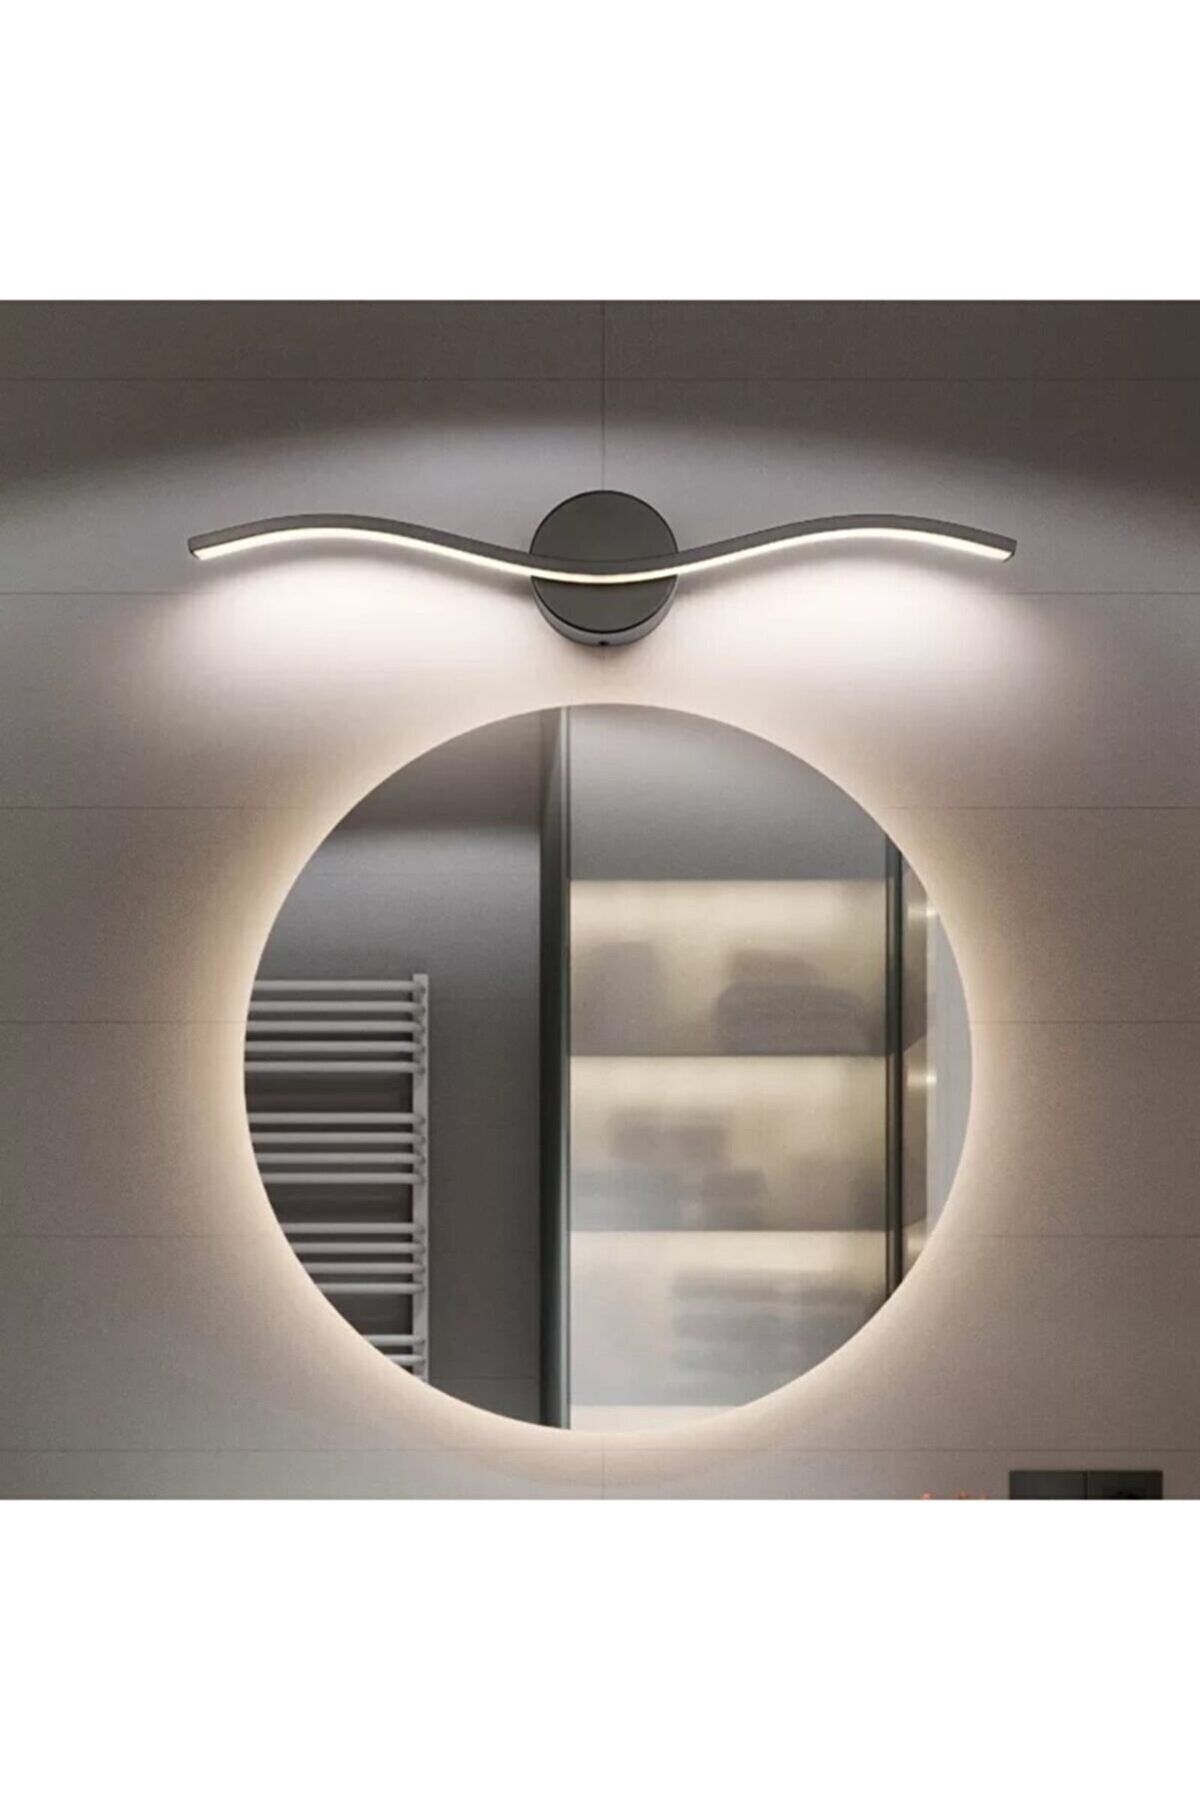 Fer Avize Diana Modern Tasarım Siyah Renk Gün Işığı Ledli Banyo - Mutfak - Salon Led Duvar Aplik